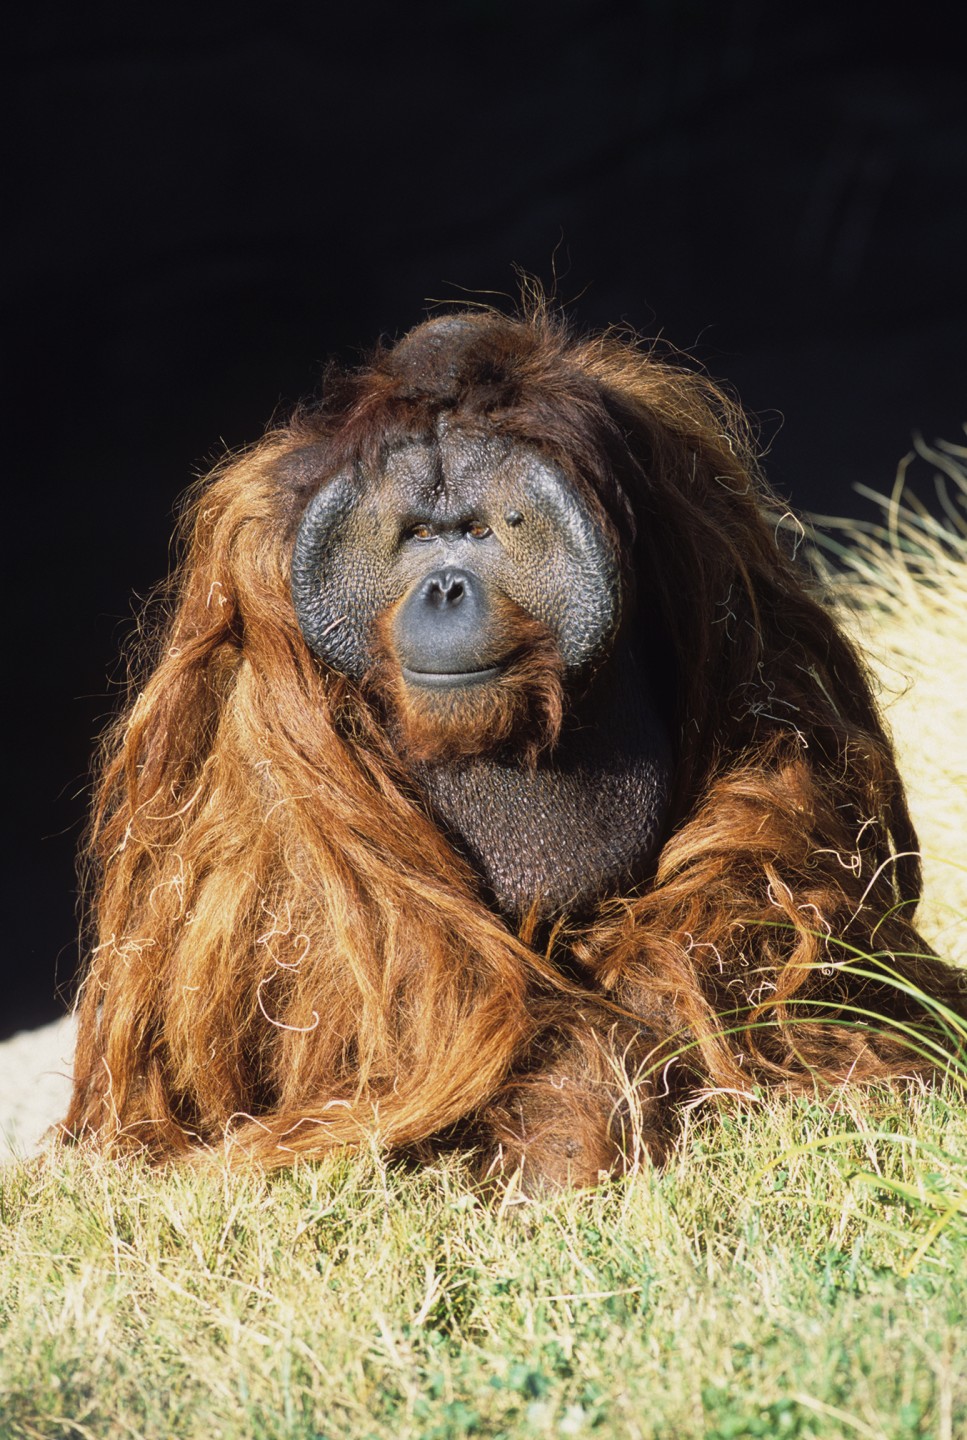 Ken Allen, Bornean orangutan